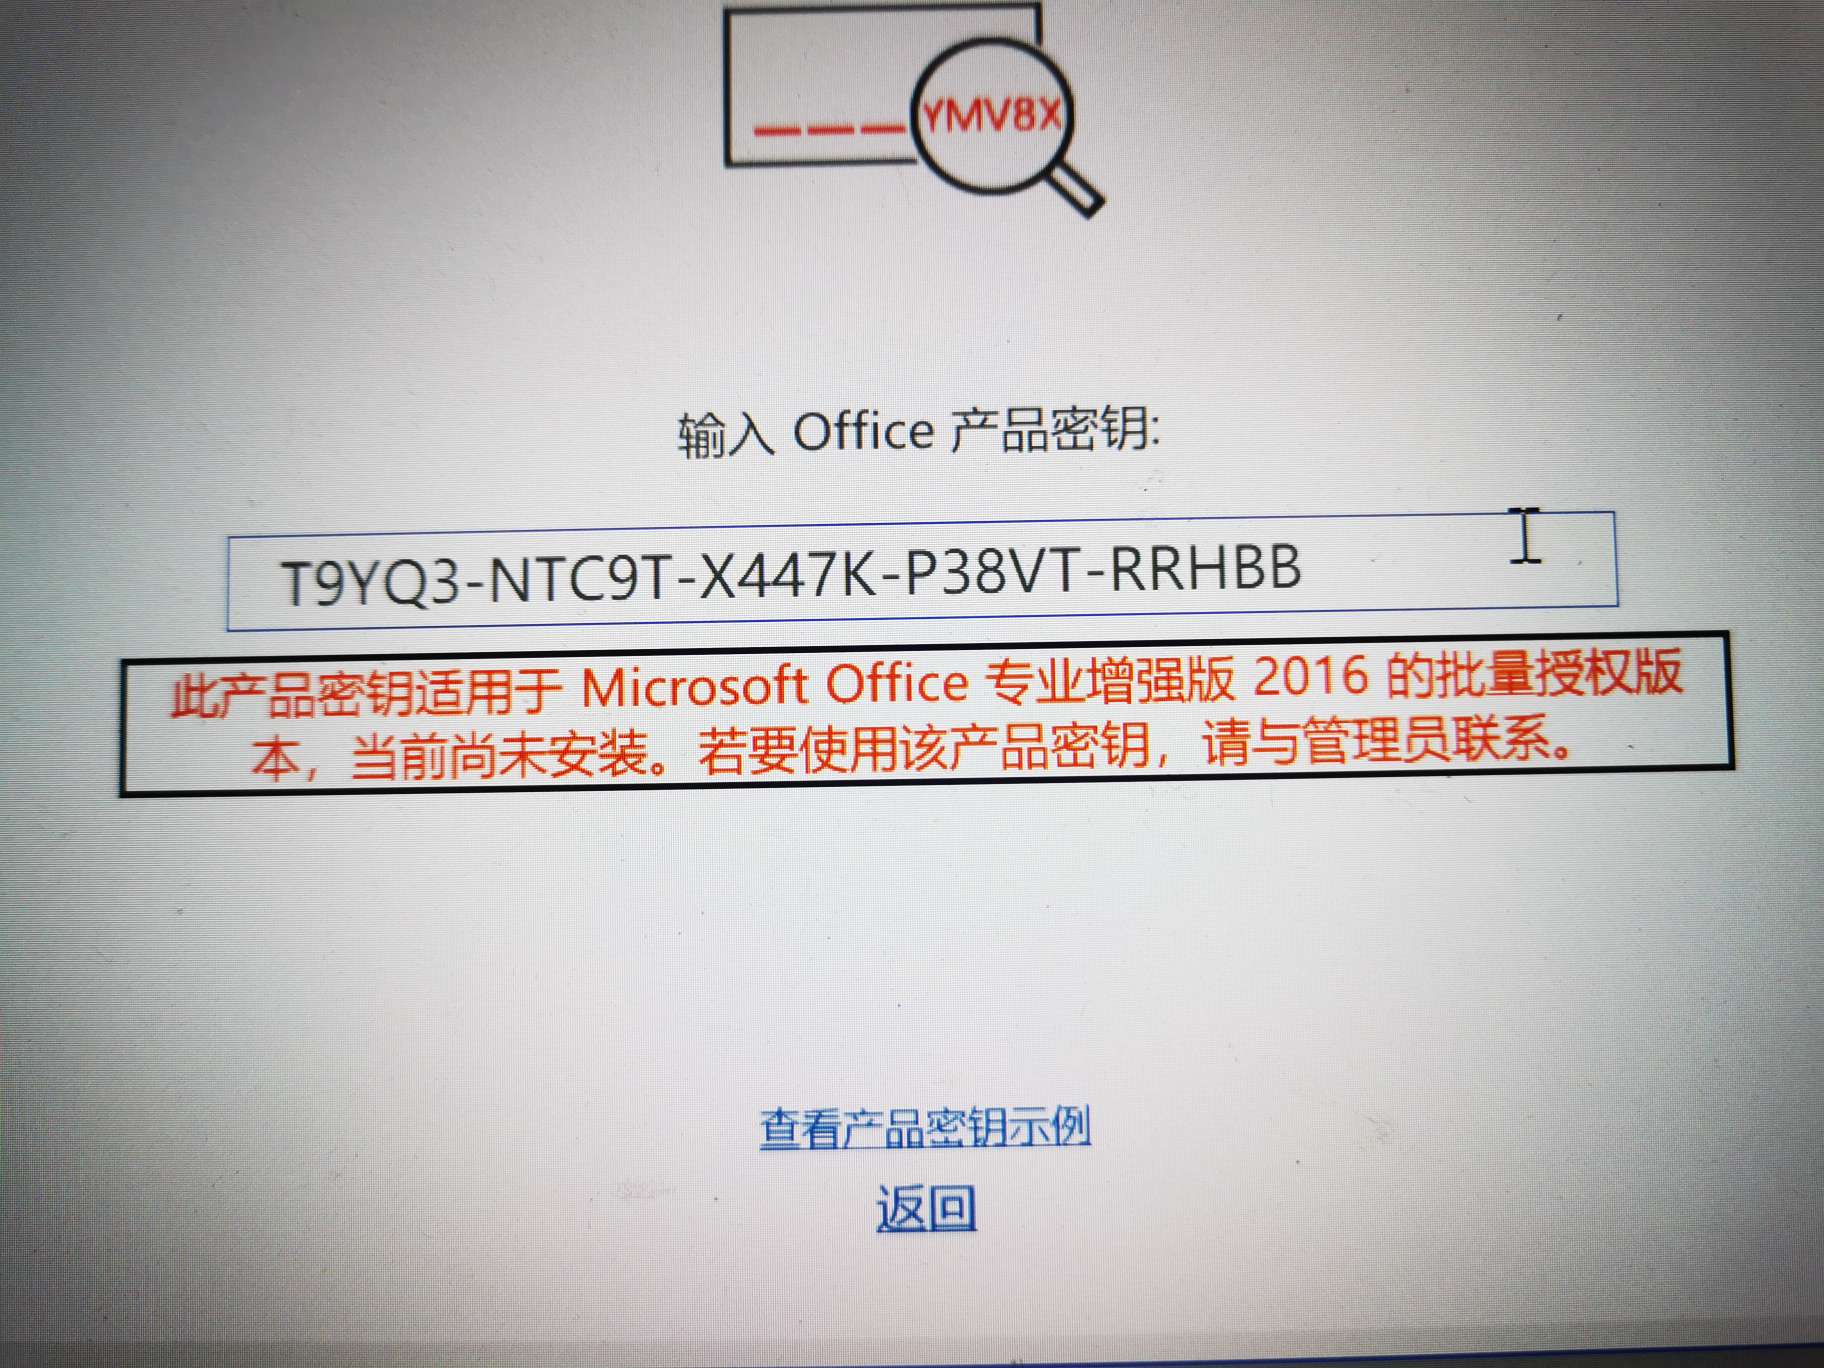 Microsoft Office 2016 Pro 激活密钥 第2张插图